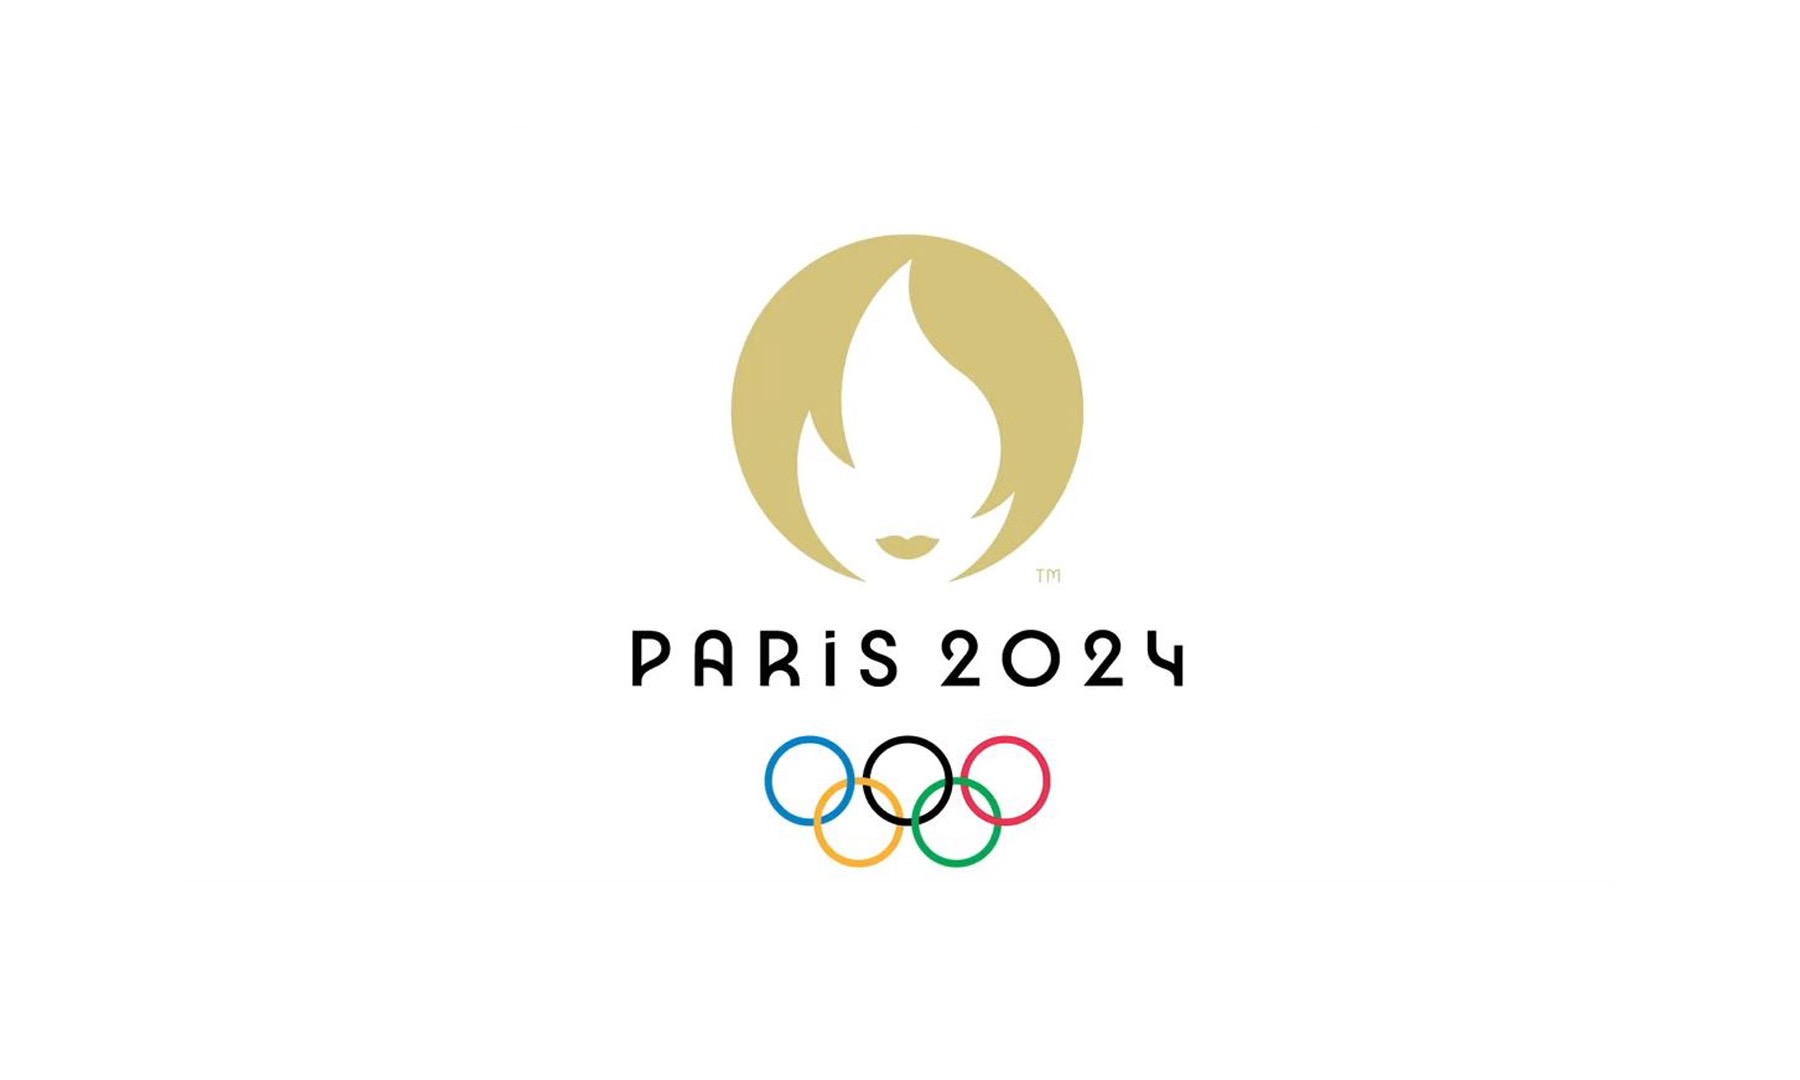 لوگوی بازی های المپیک 2024 پاریس.